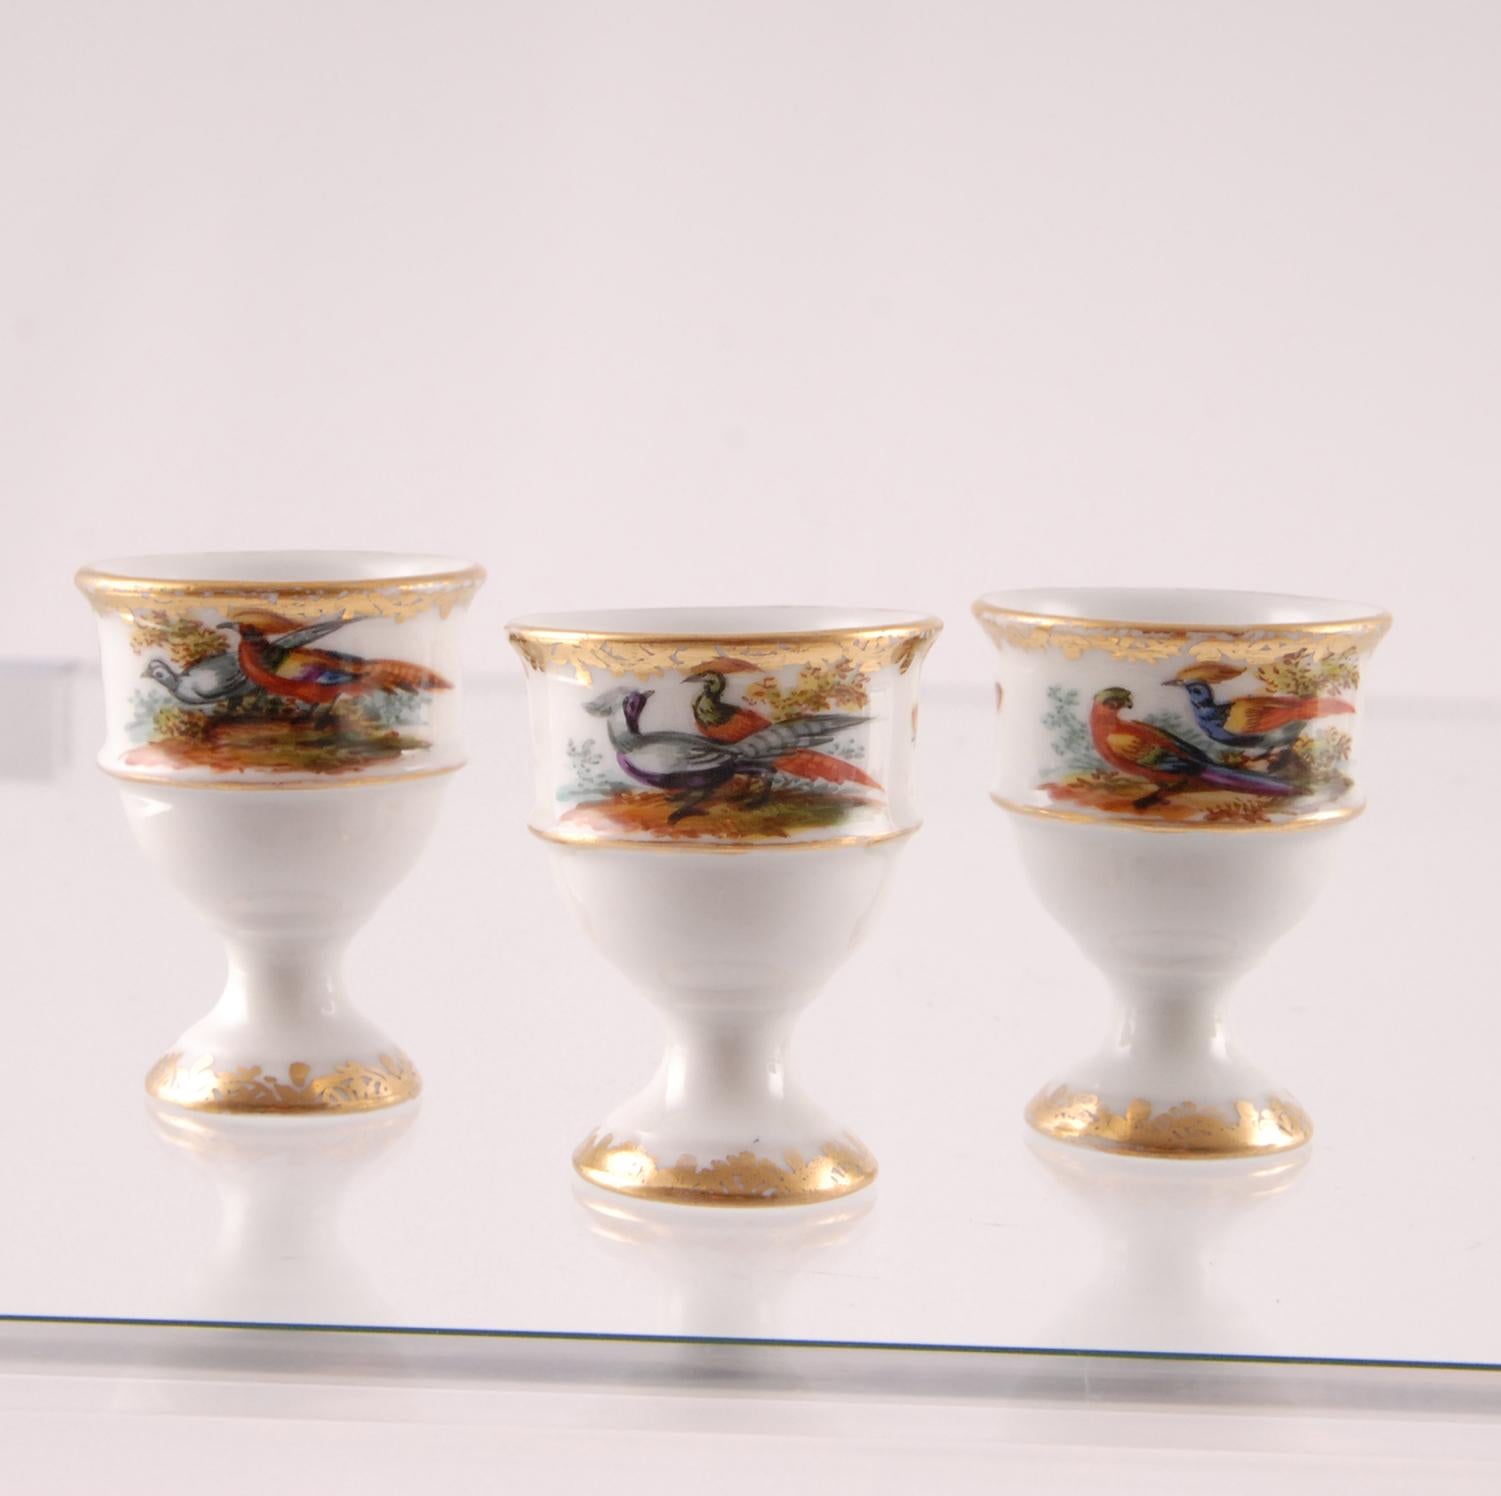 Porcelain Egg Stand Cruet 18th century Meissen Style Victorian German Handmade 1